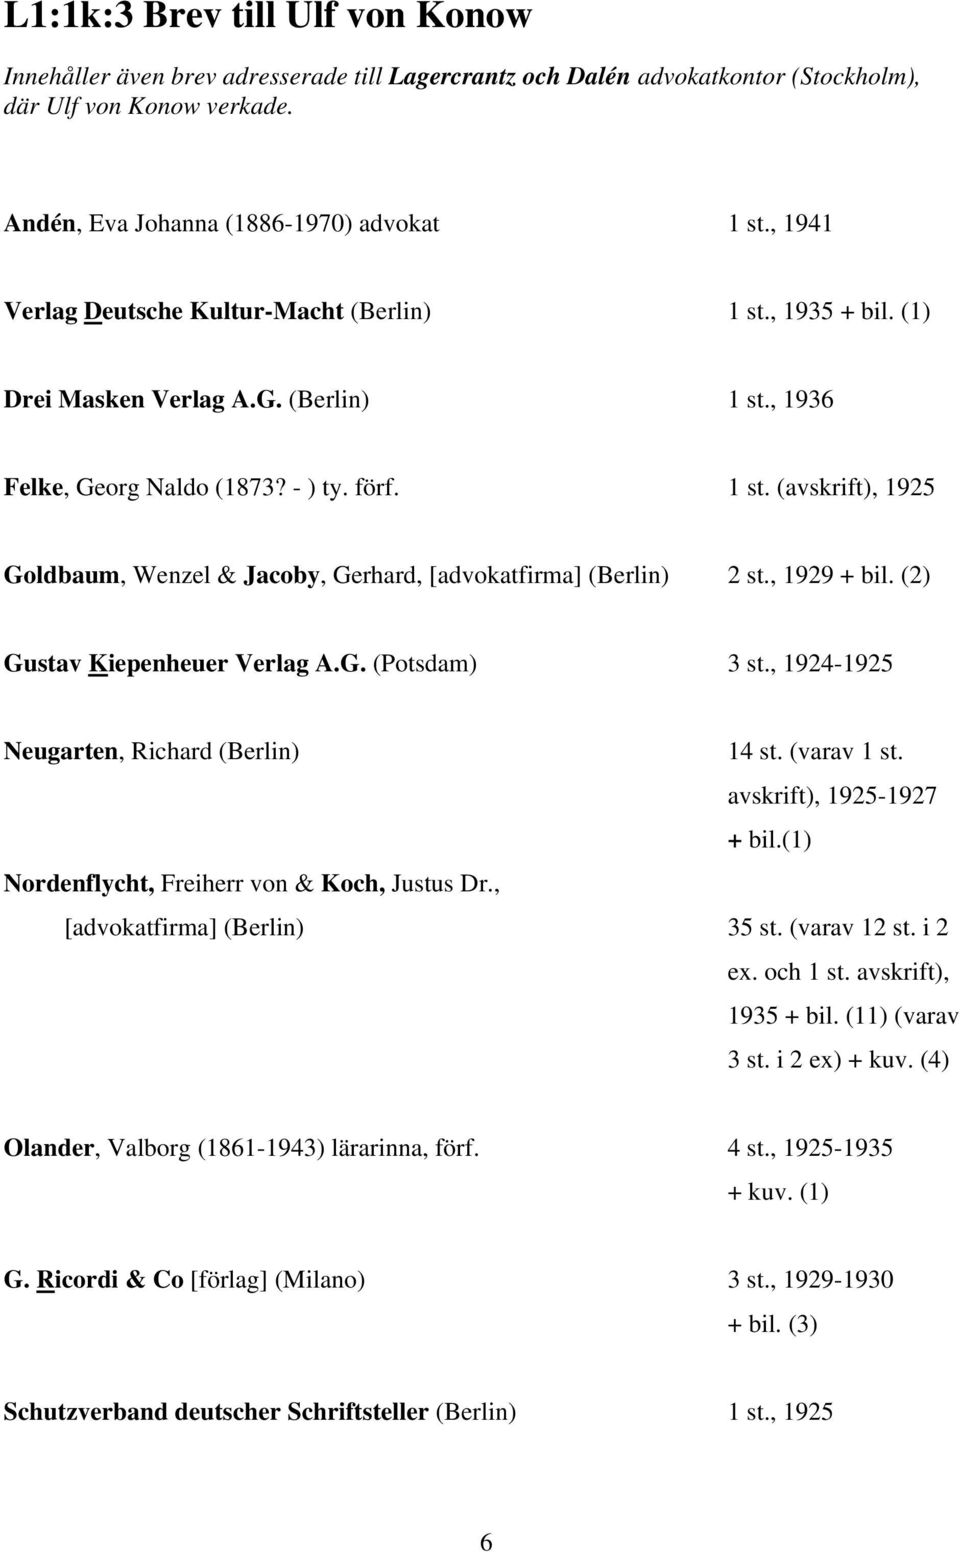 , 1929 + bil. (2) Gustav Kiepenheuer Verlag A.G. (Potsdam) 3 st., 1924-1925 Neugarten, Richard (Berlin) 14 st. (varav 1 st. avskrift), 1925-1927 + bil.(1) Nordenflycht, Freiherr von & Koch, Justus Dr.